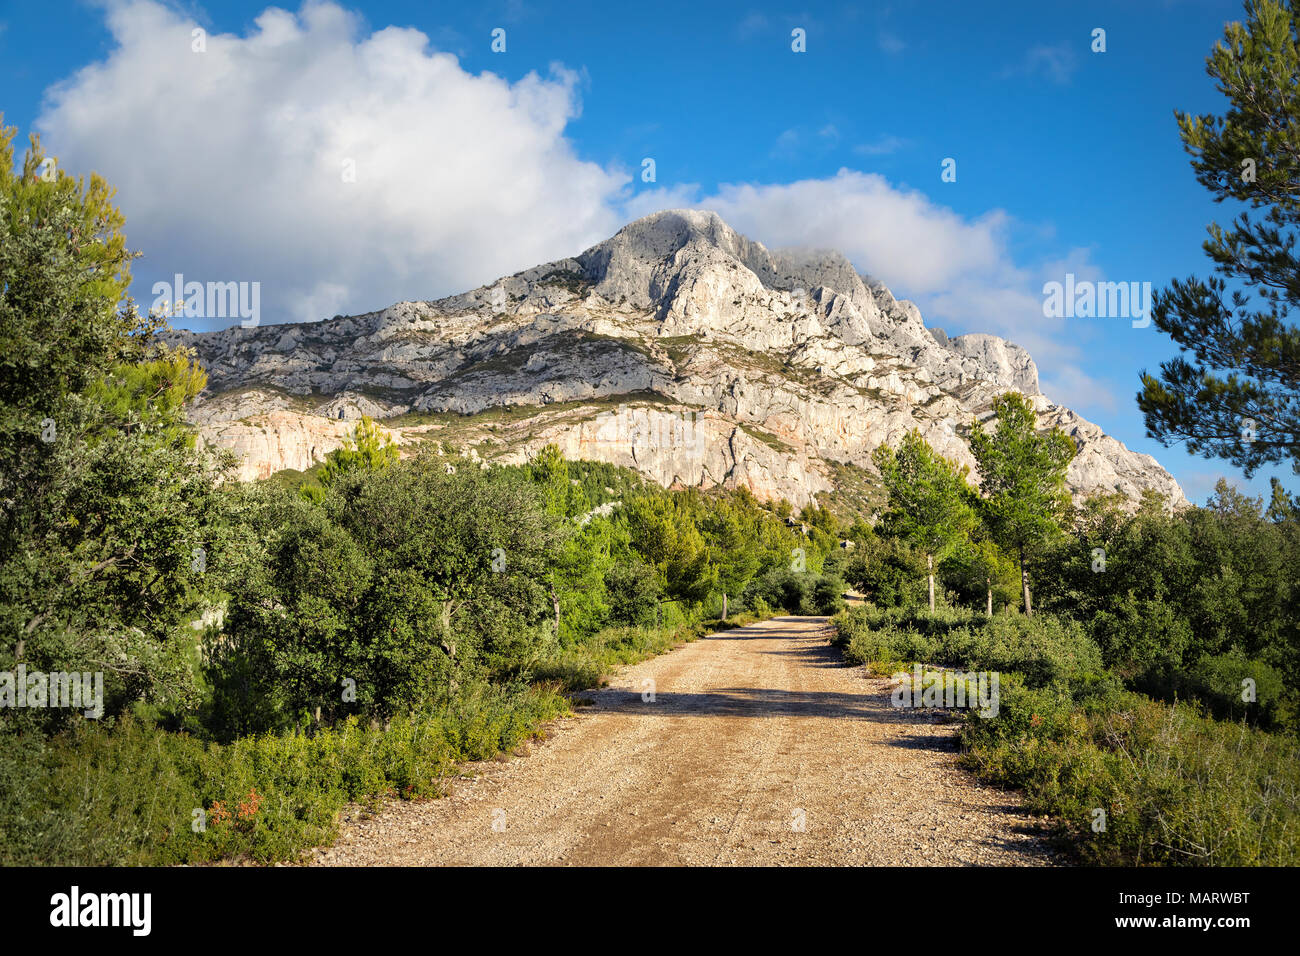 Montagne Sainte-Victoire - ein Kalkstein Bergrücken im Süden Frankreichs in der Nähe von Aix-en-Provence Stockfoto